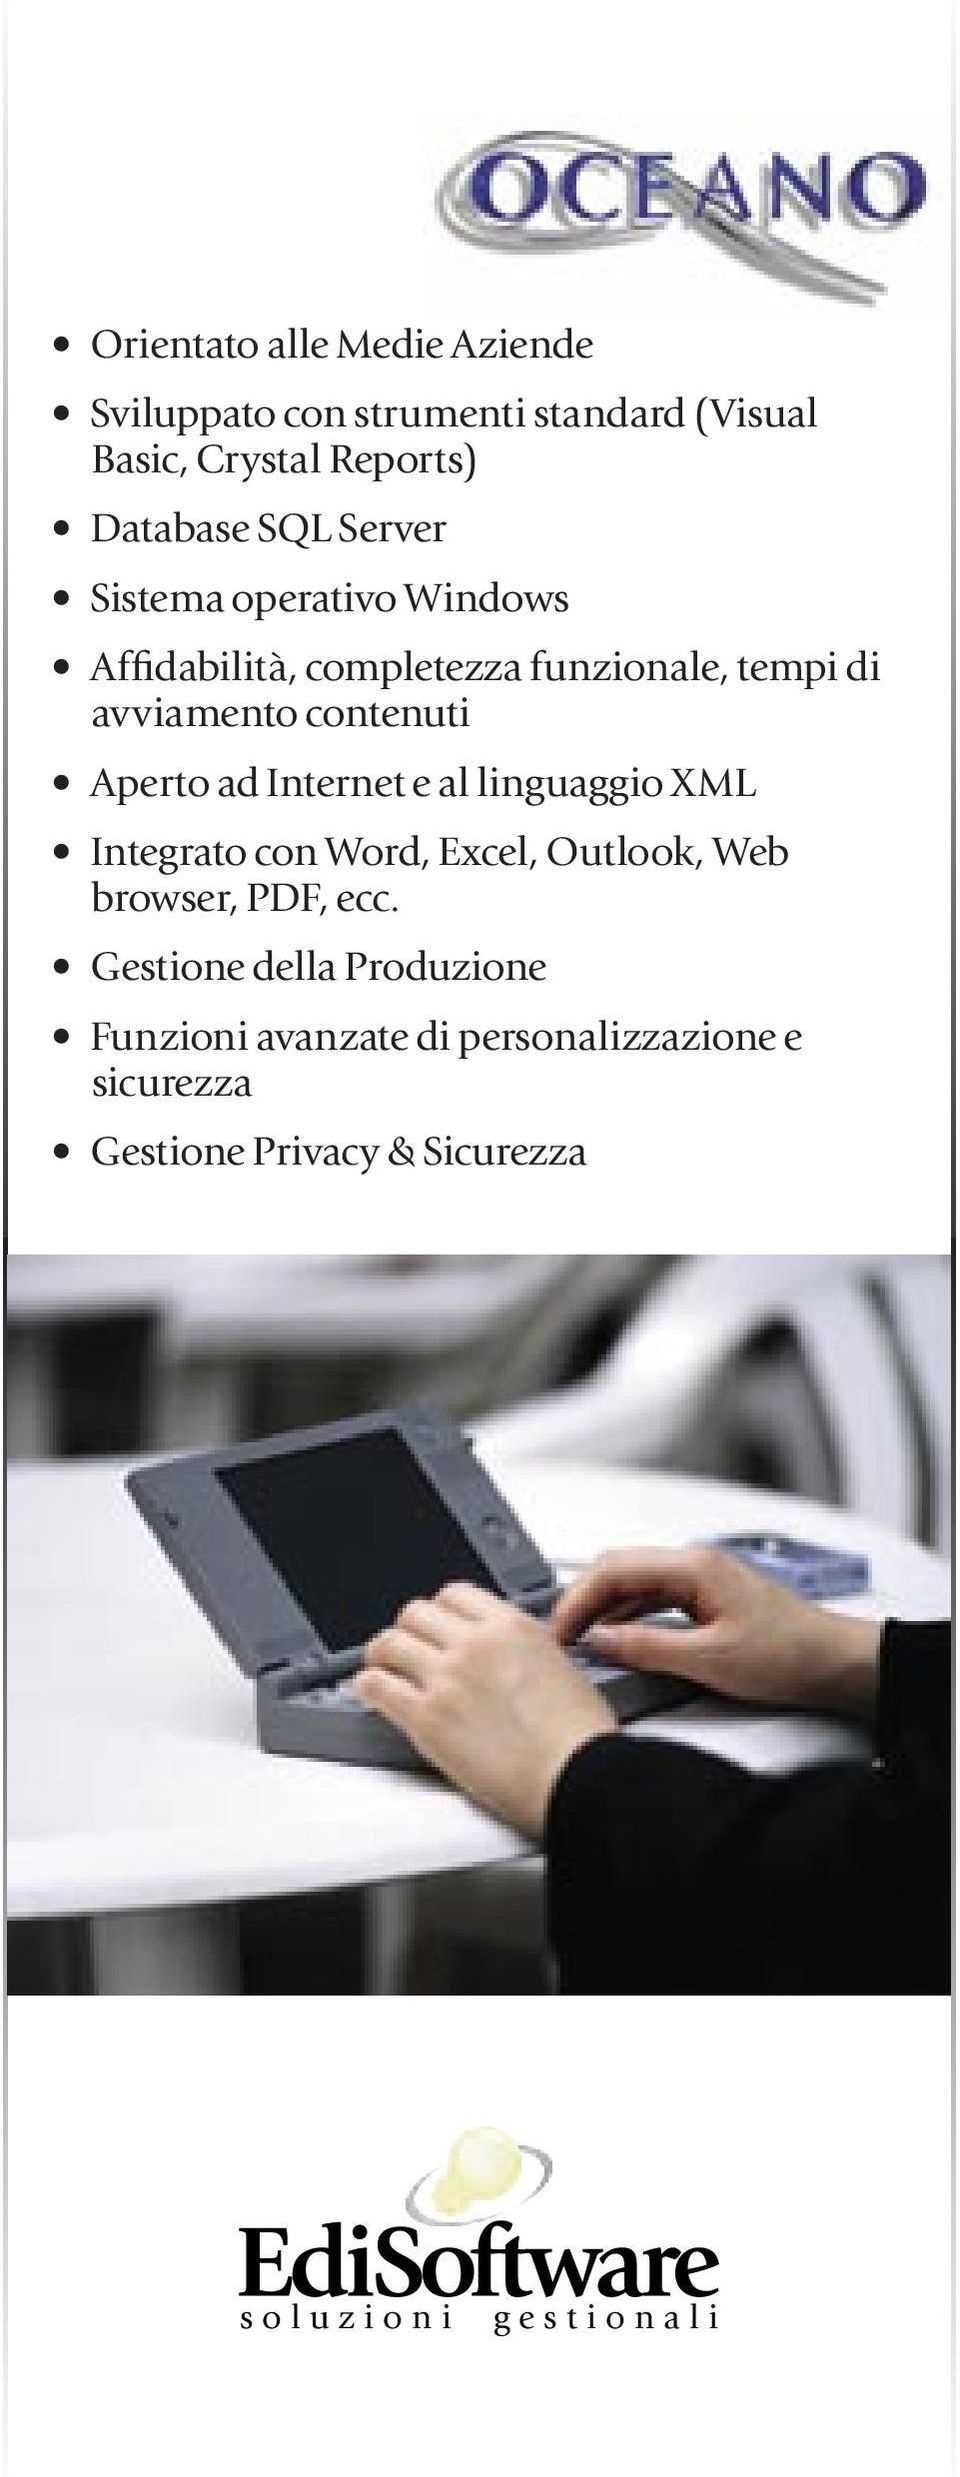 Internet e al linguaggio XML Integrato con Word, Excel, Outlook, Web browser, PDF, ecc.